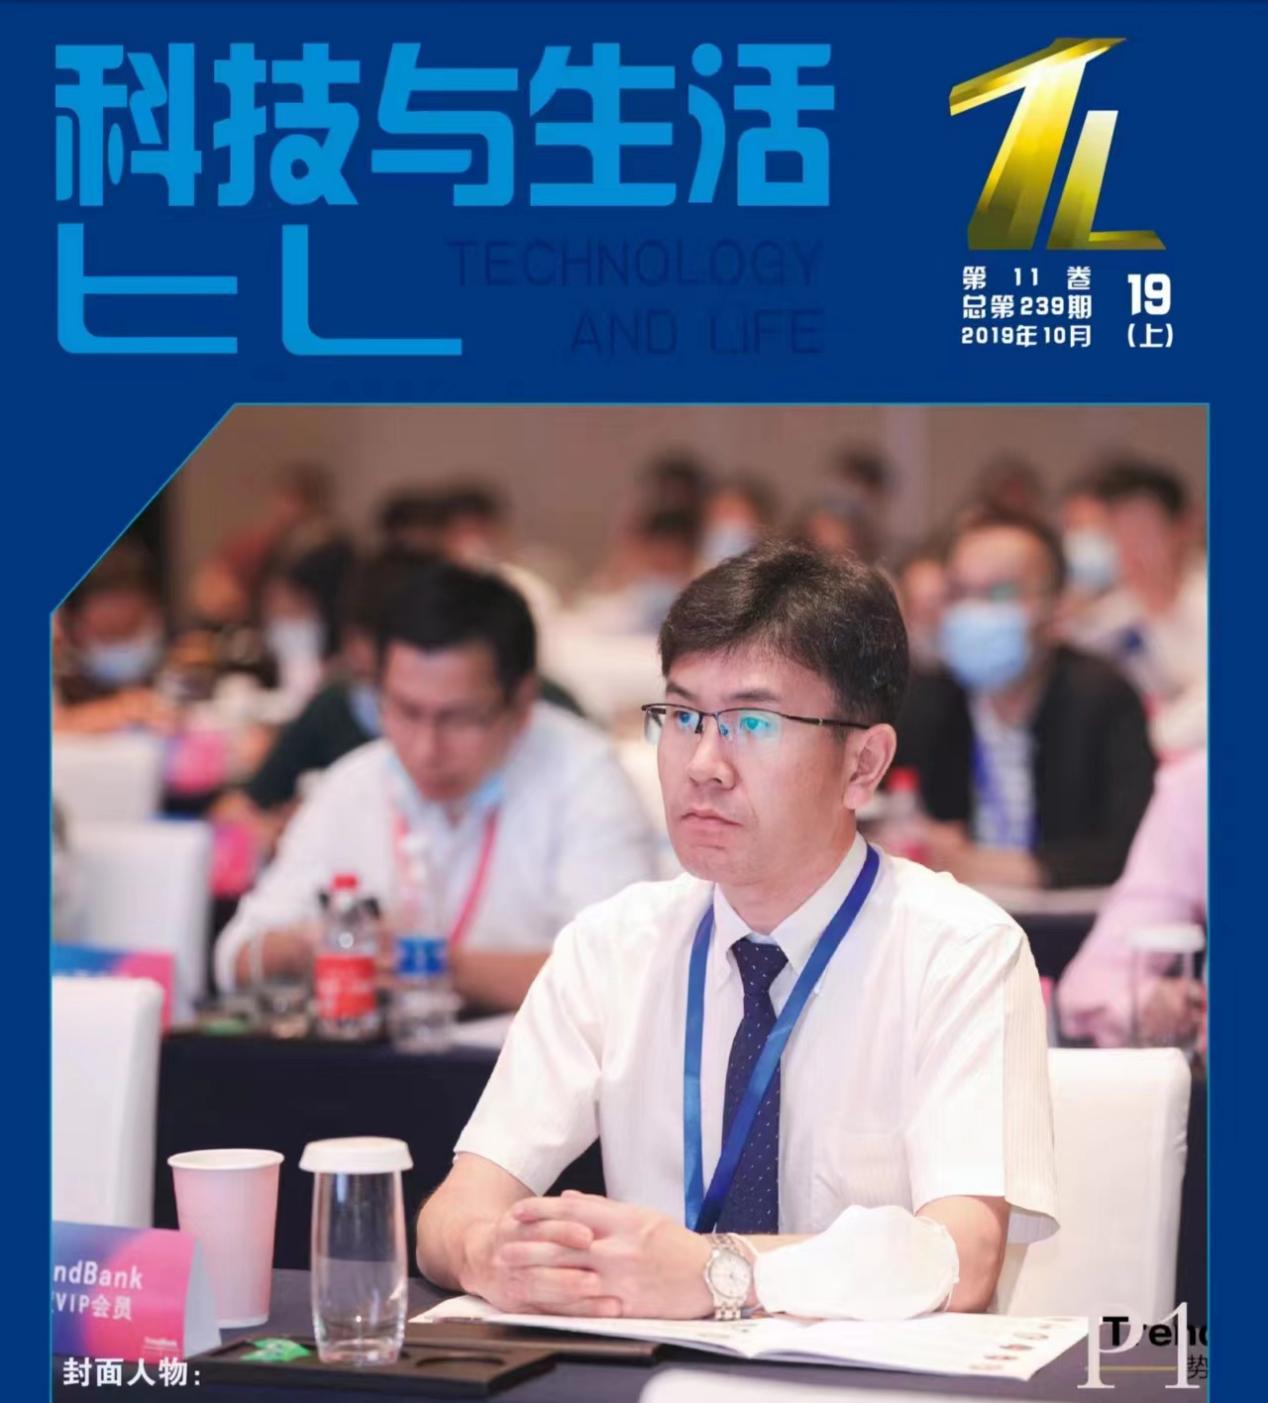 上海倍恩特纳米科技创始人金京浩喜迎二十大奋进新征程